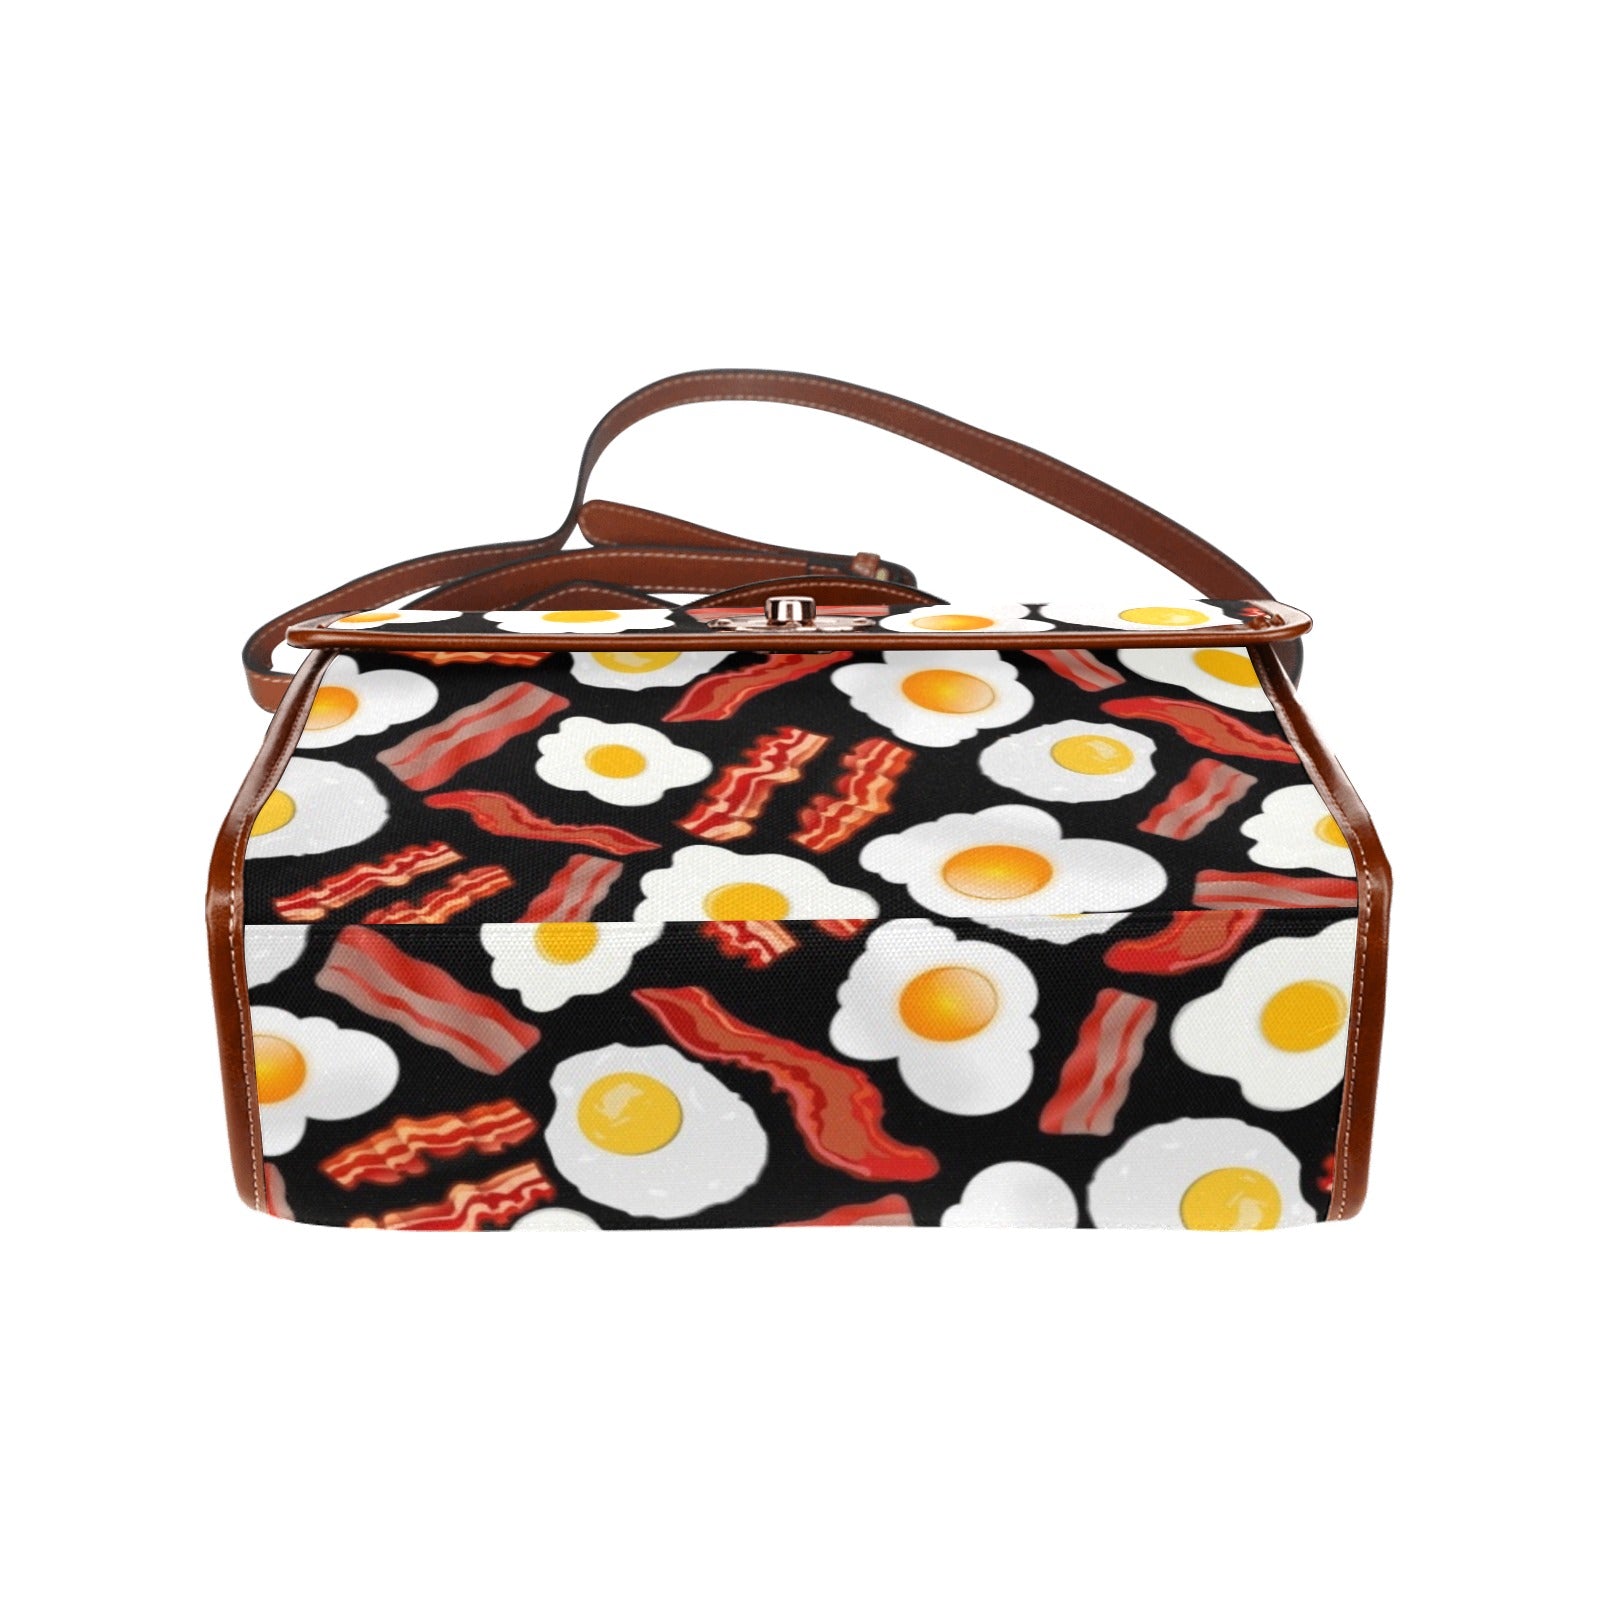 Bacon and Eggs - Waterproof Canvas Handbag